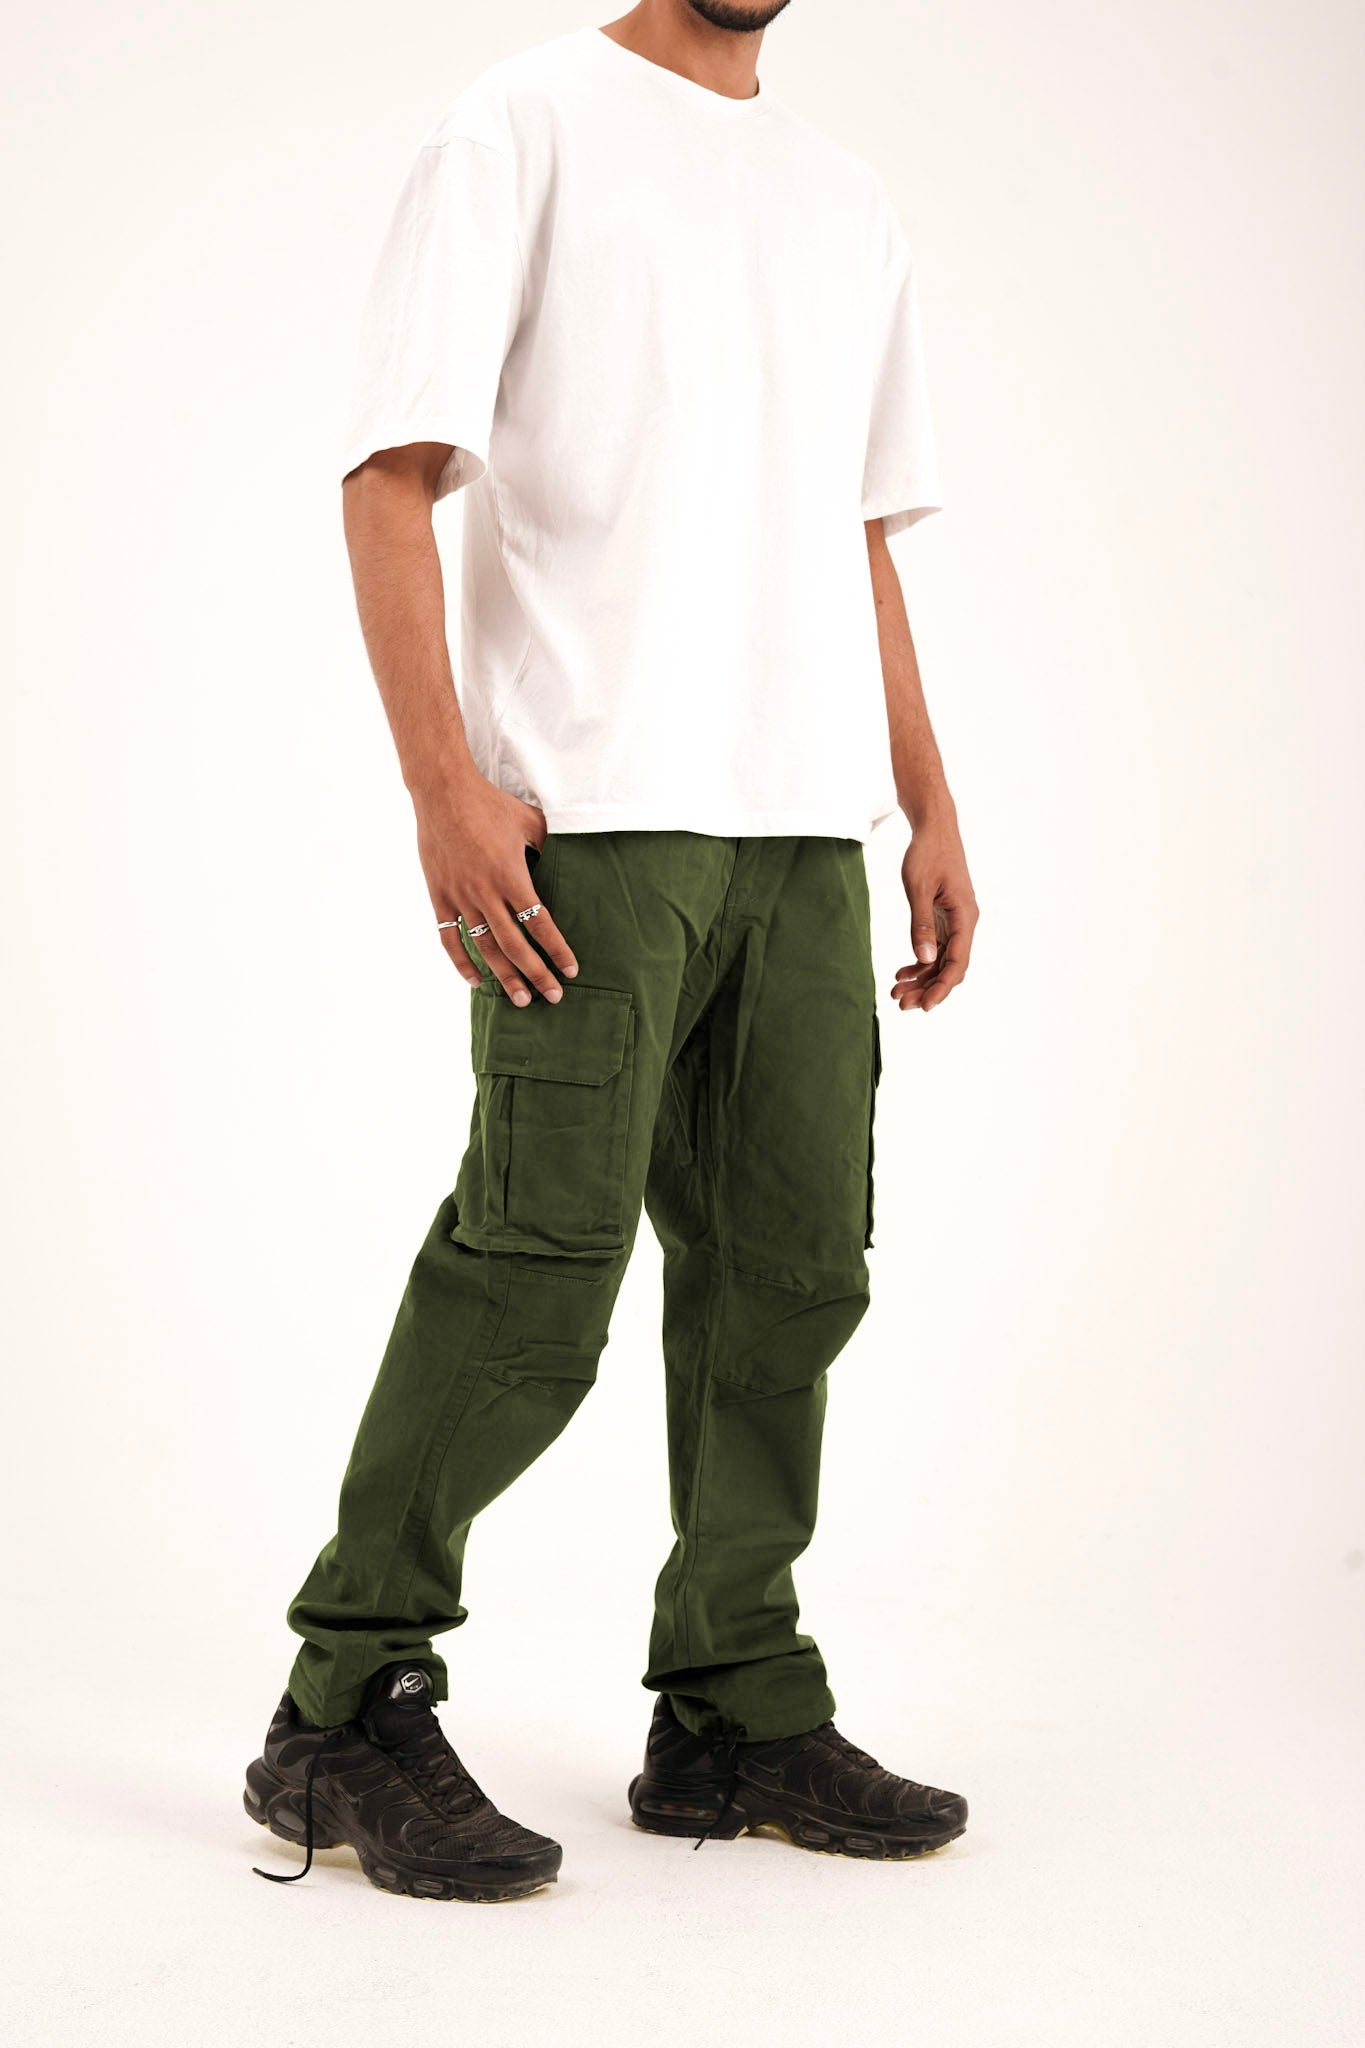 Cargo Pants- Olive Green Baggy Fit Cargos for Men Online | Powerlook